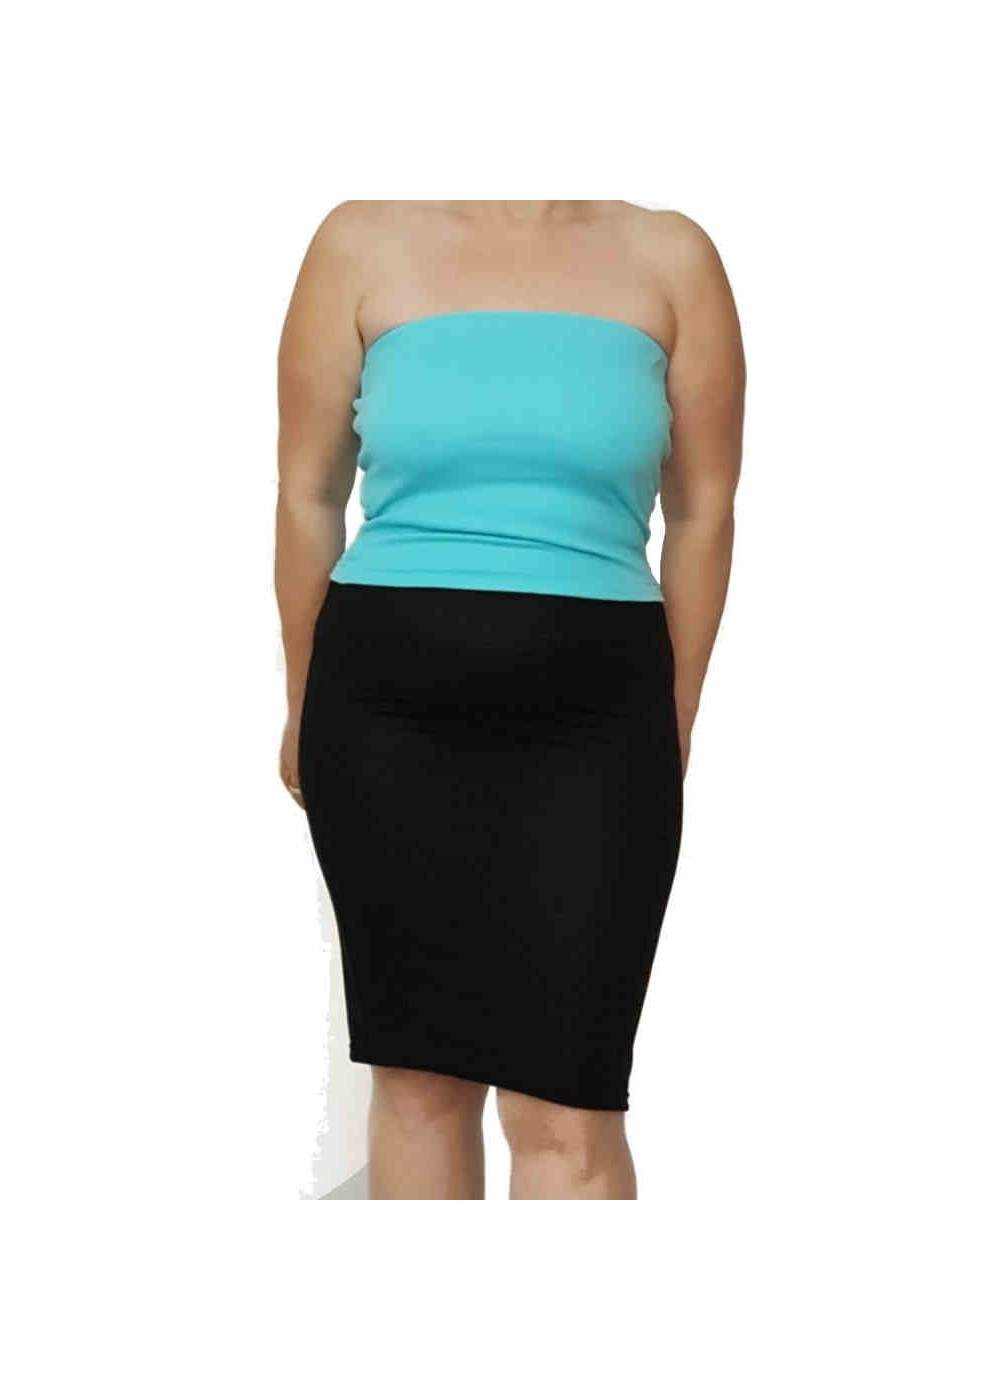 Black pencil skirt stretch skirt knee length sizes 44 - 52 - 